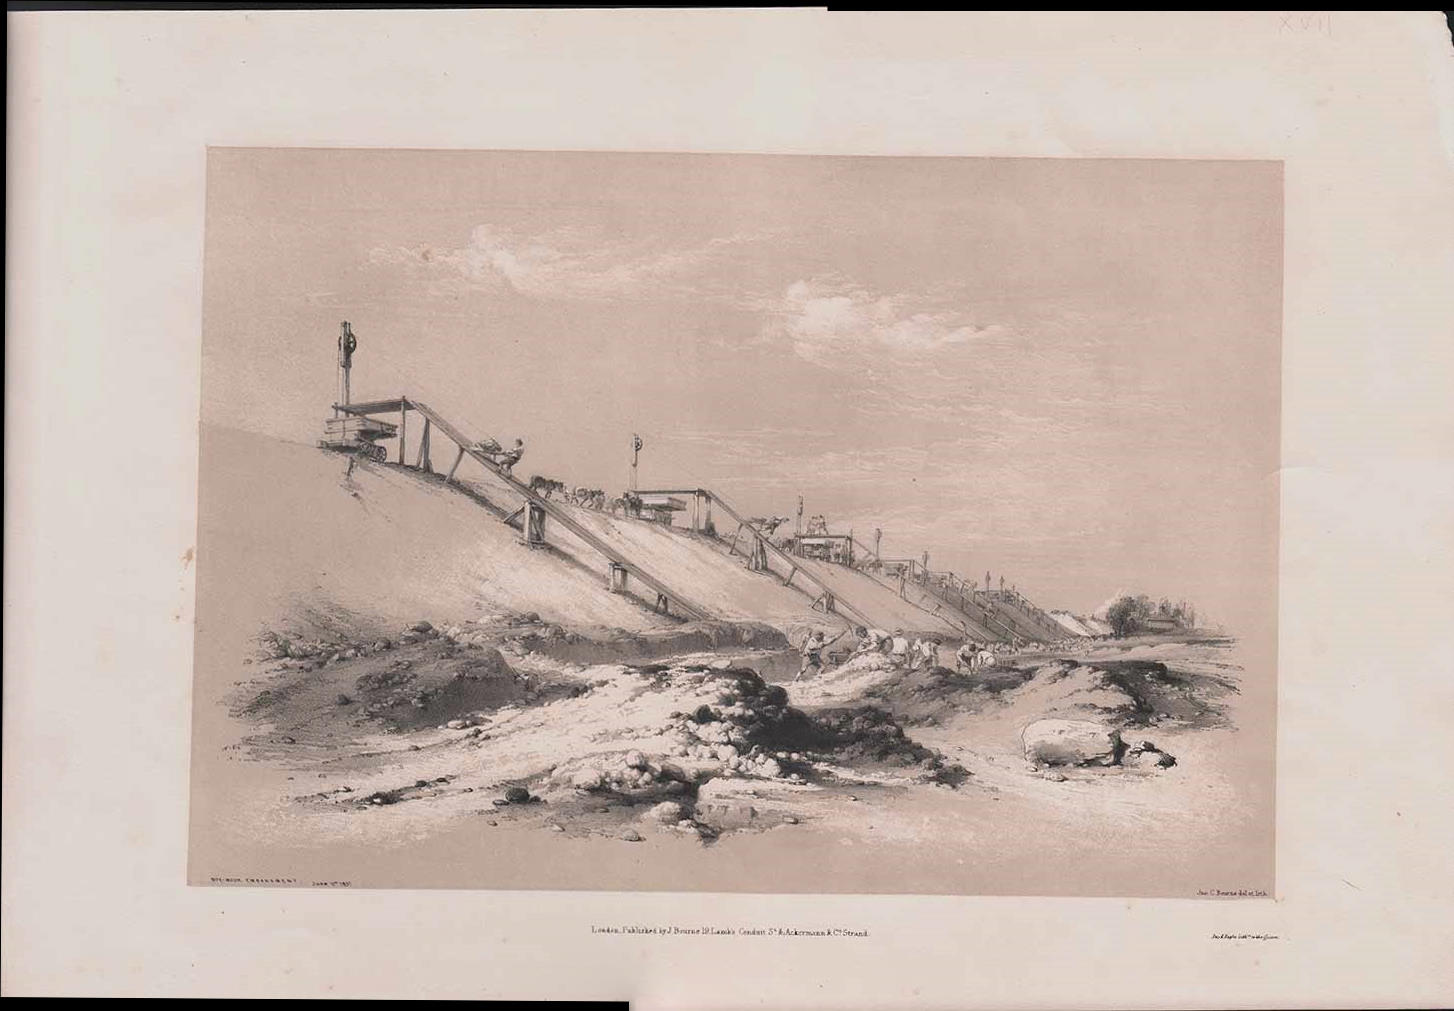 ‘Box-Moor Embankment June 11th 1837’